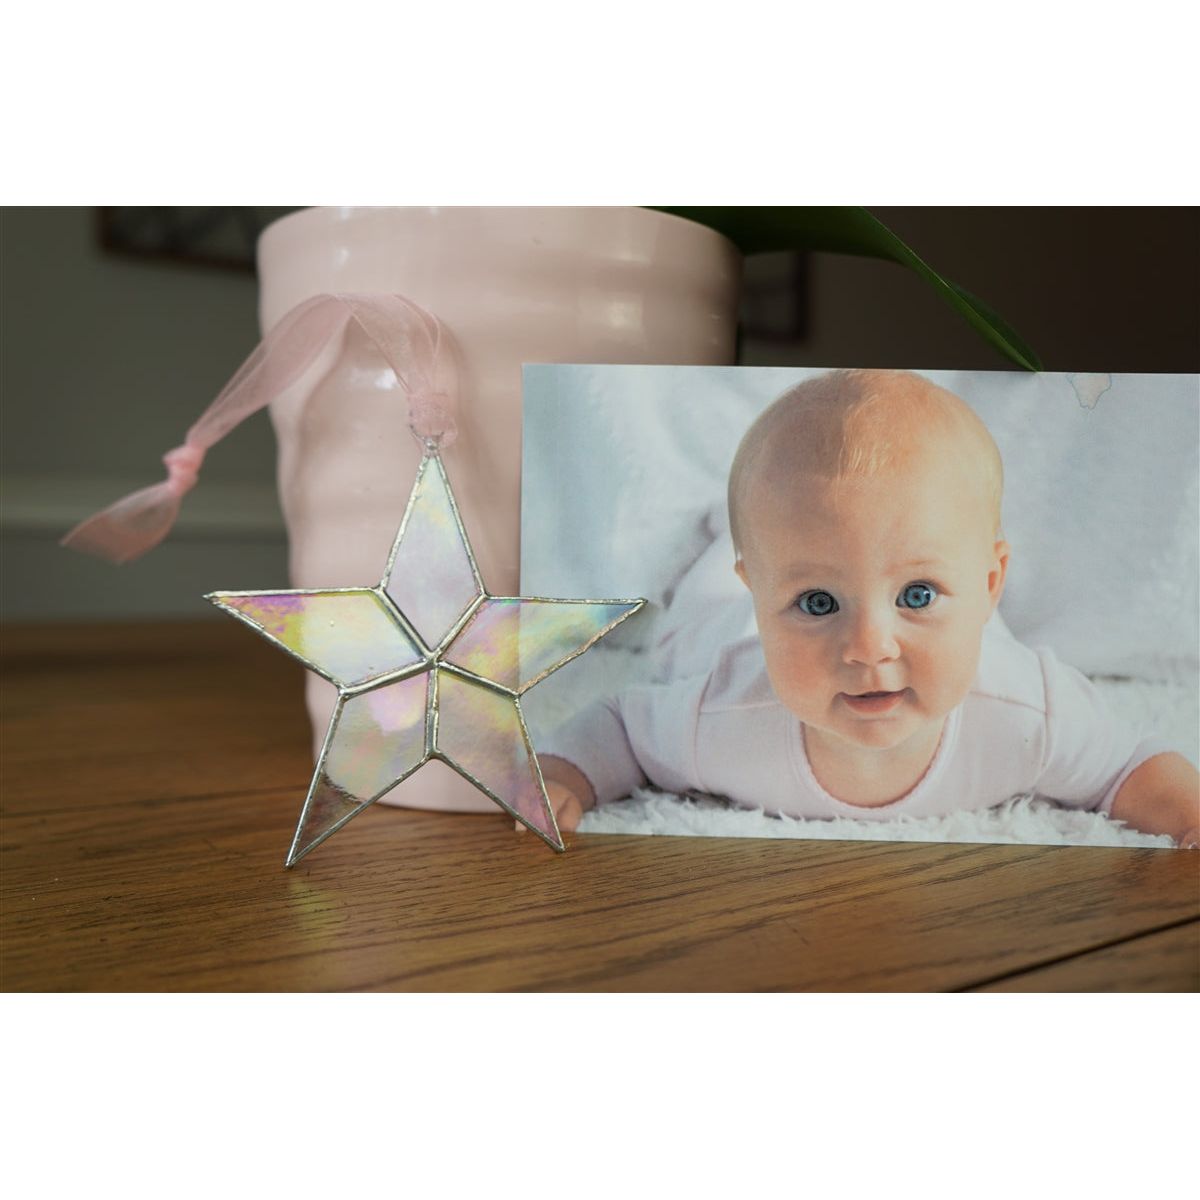 Little Star: Baby Girl Gift Handmade Stained Glass Star